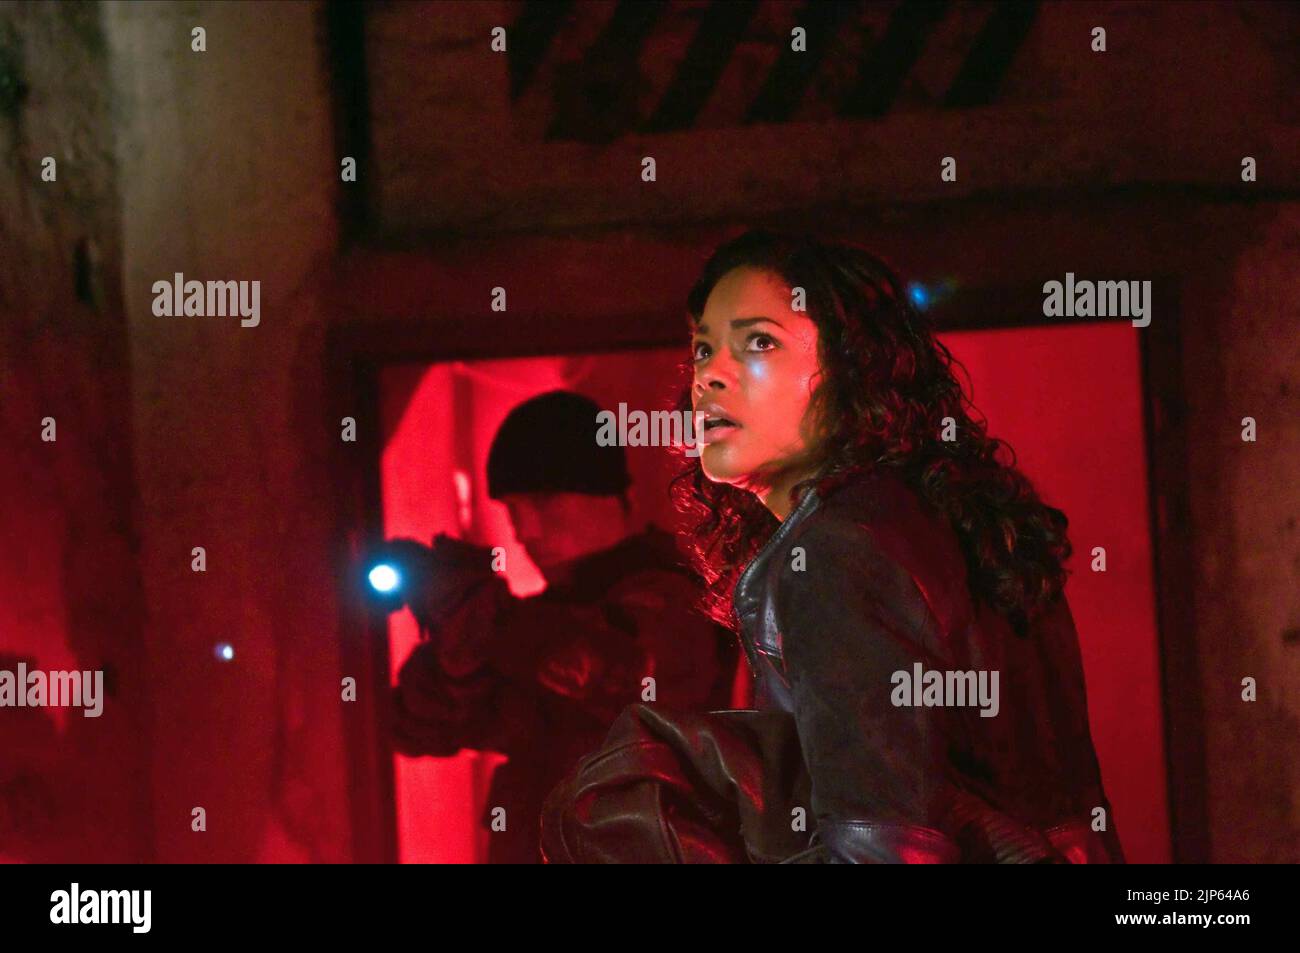 FilmFatale_NYC 🇭🇹 🇩🇴 🇺🇸 on X: #nfotd Ninja Assassin (2009)  starring Rain, Naomie Harris.  / X